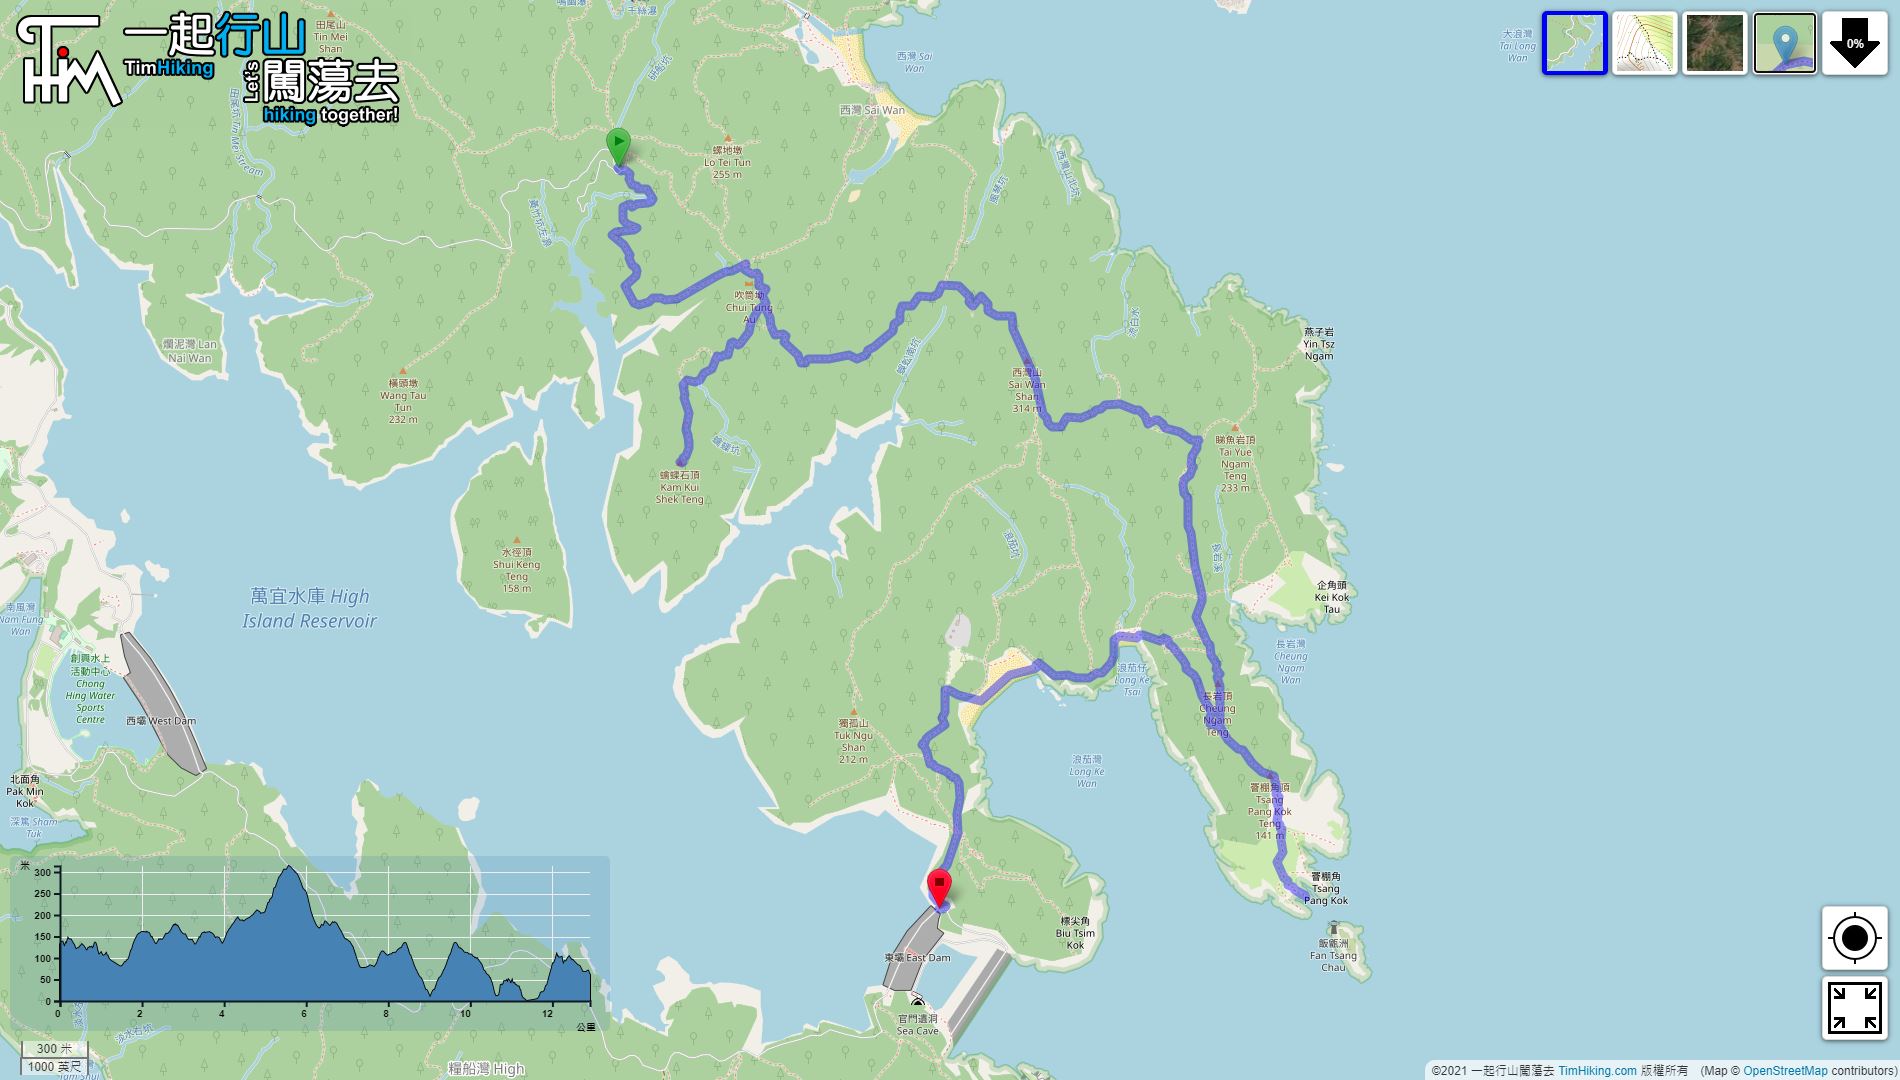 「Kam Kui Shek Teng, Tsang Pang Kok Tsui」路線Map